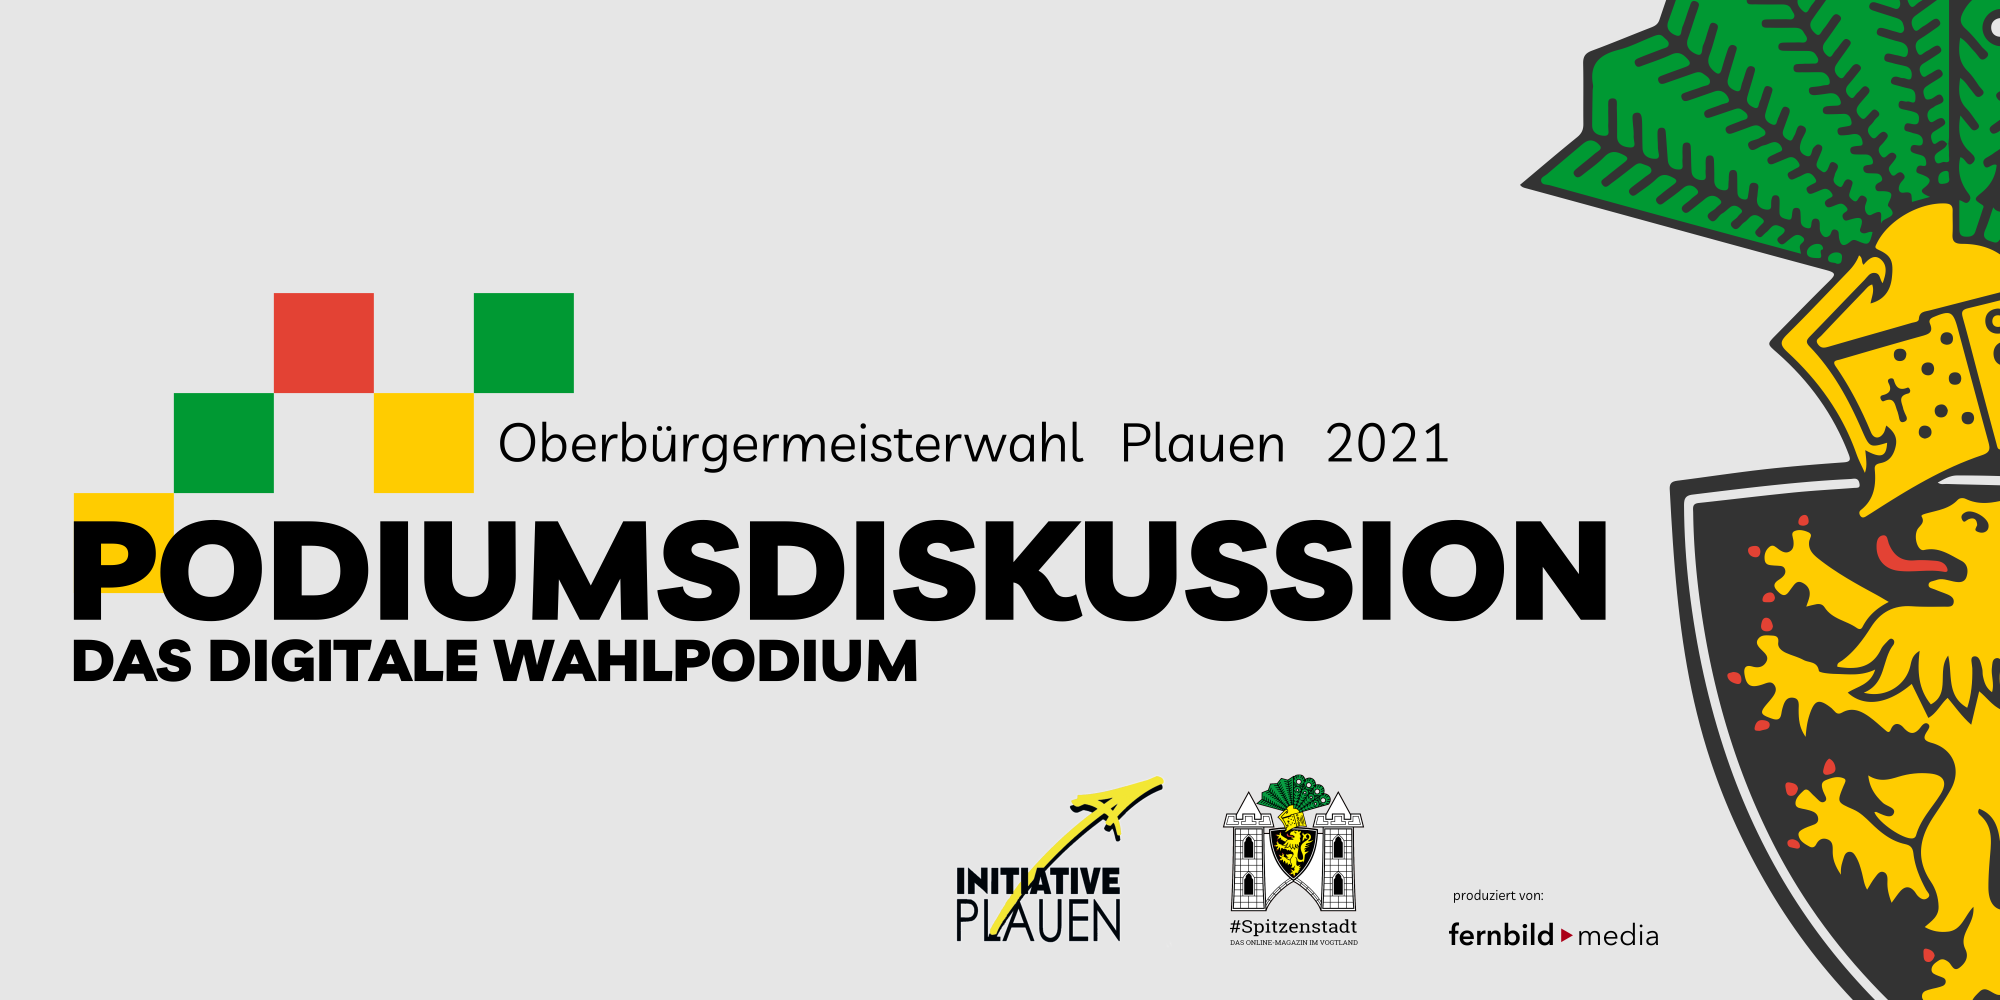 Podiumsdisskusion - Oberbürgermeisterwahl in Plaien 2021